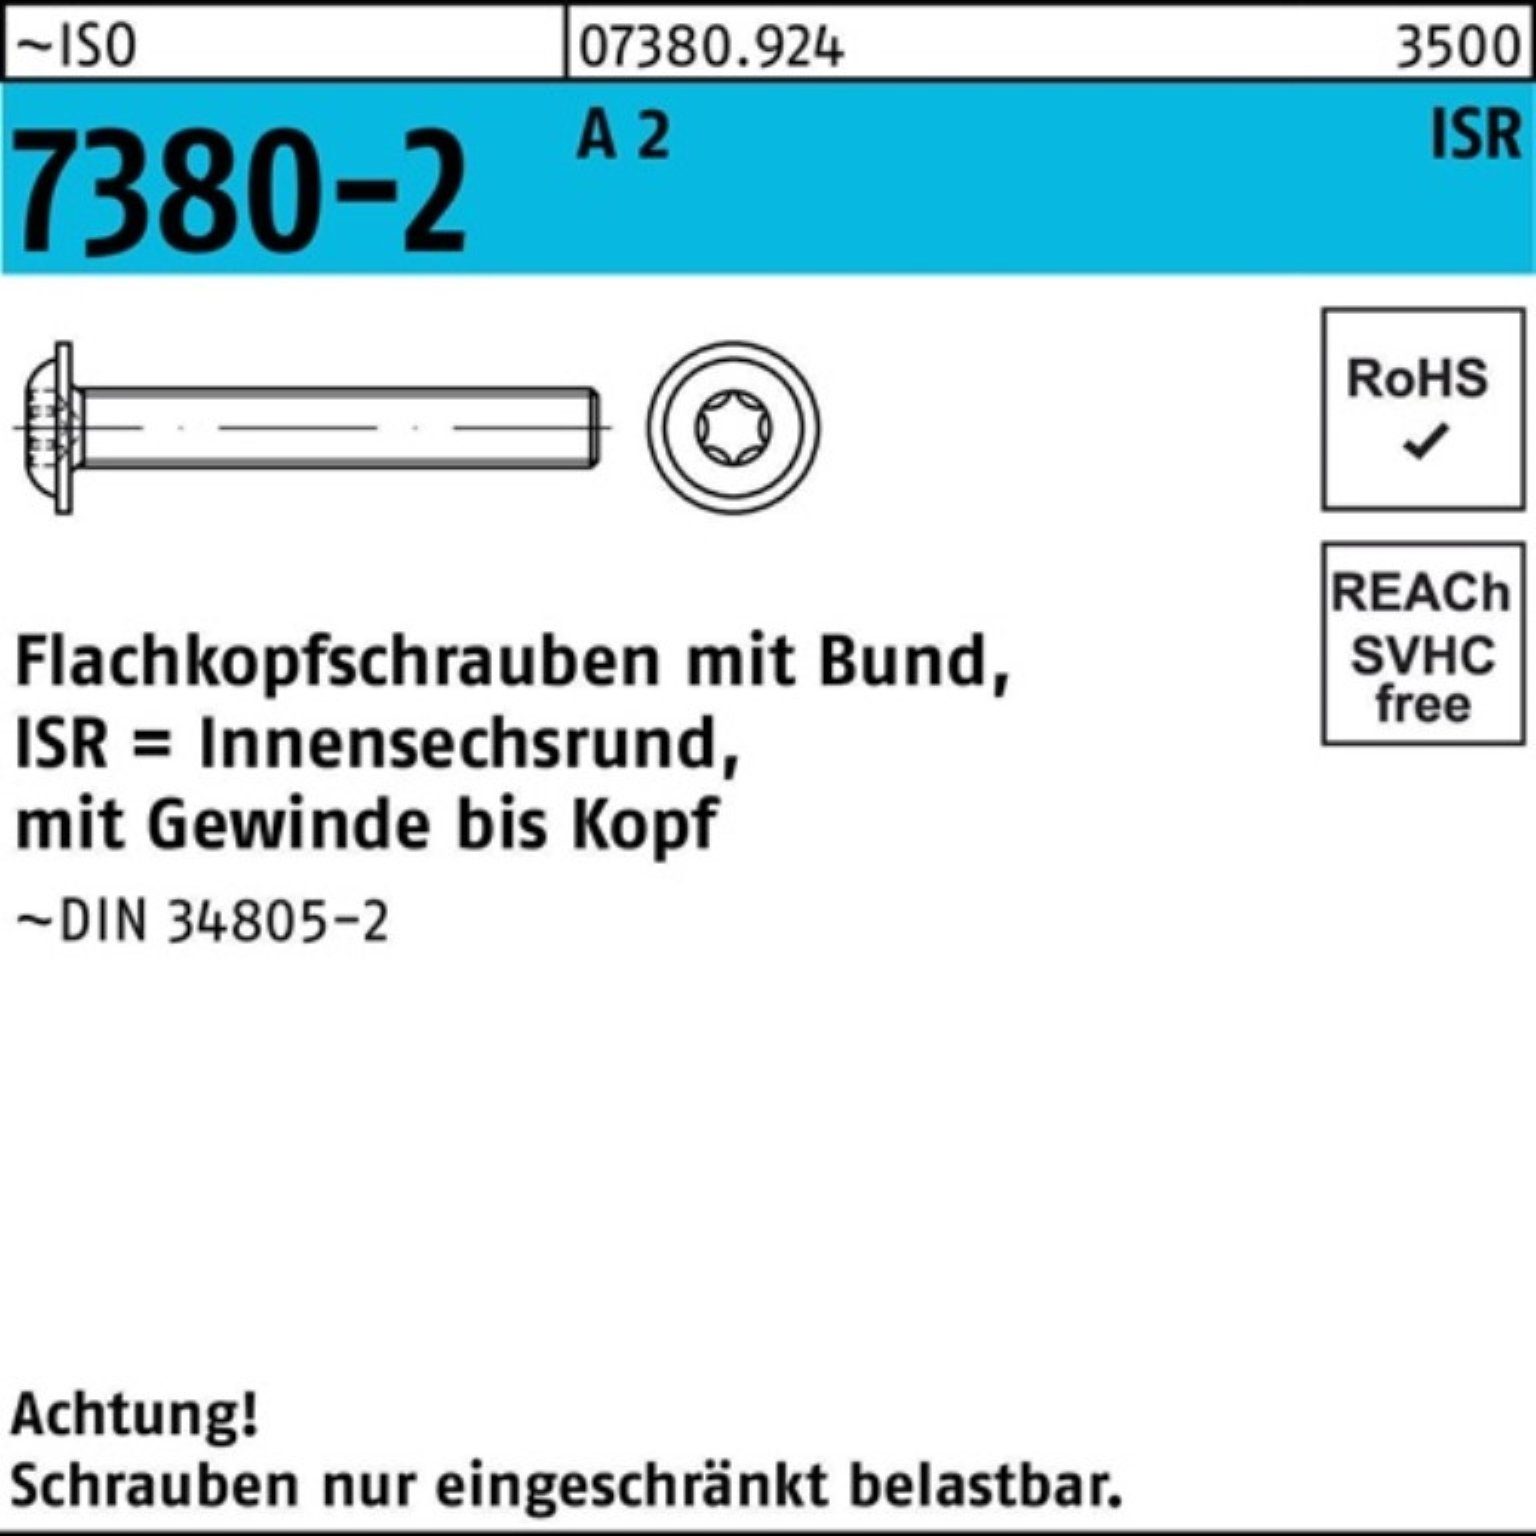 Reyher Schraube 200er Pack Flachkopfschraube 2 7380-2 M8x 45-T40 VG 200 ISO A Bund/ISR